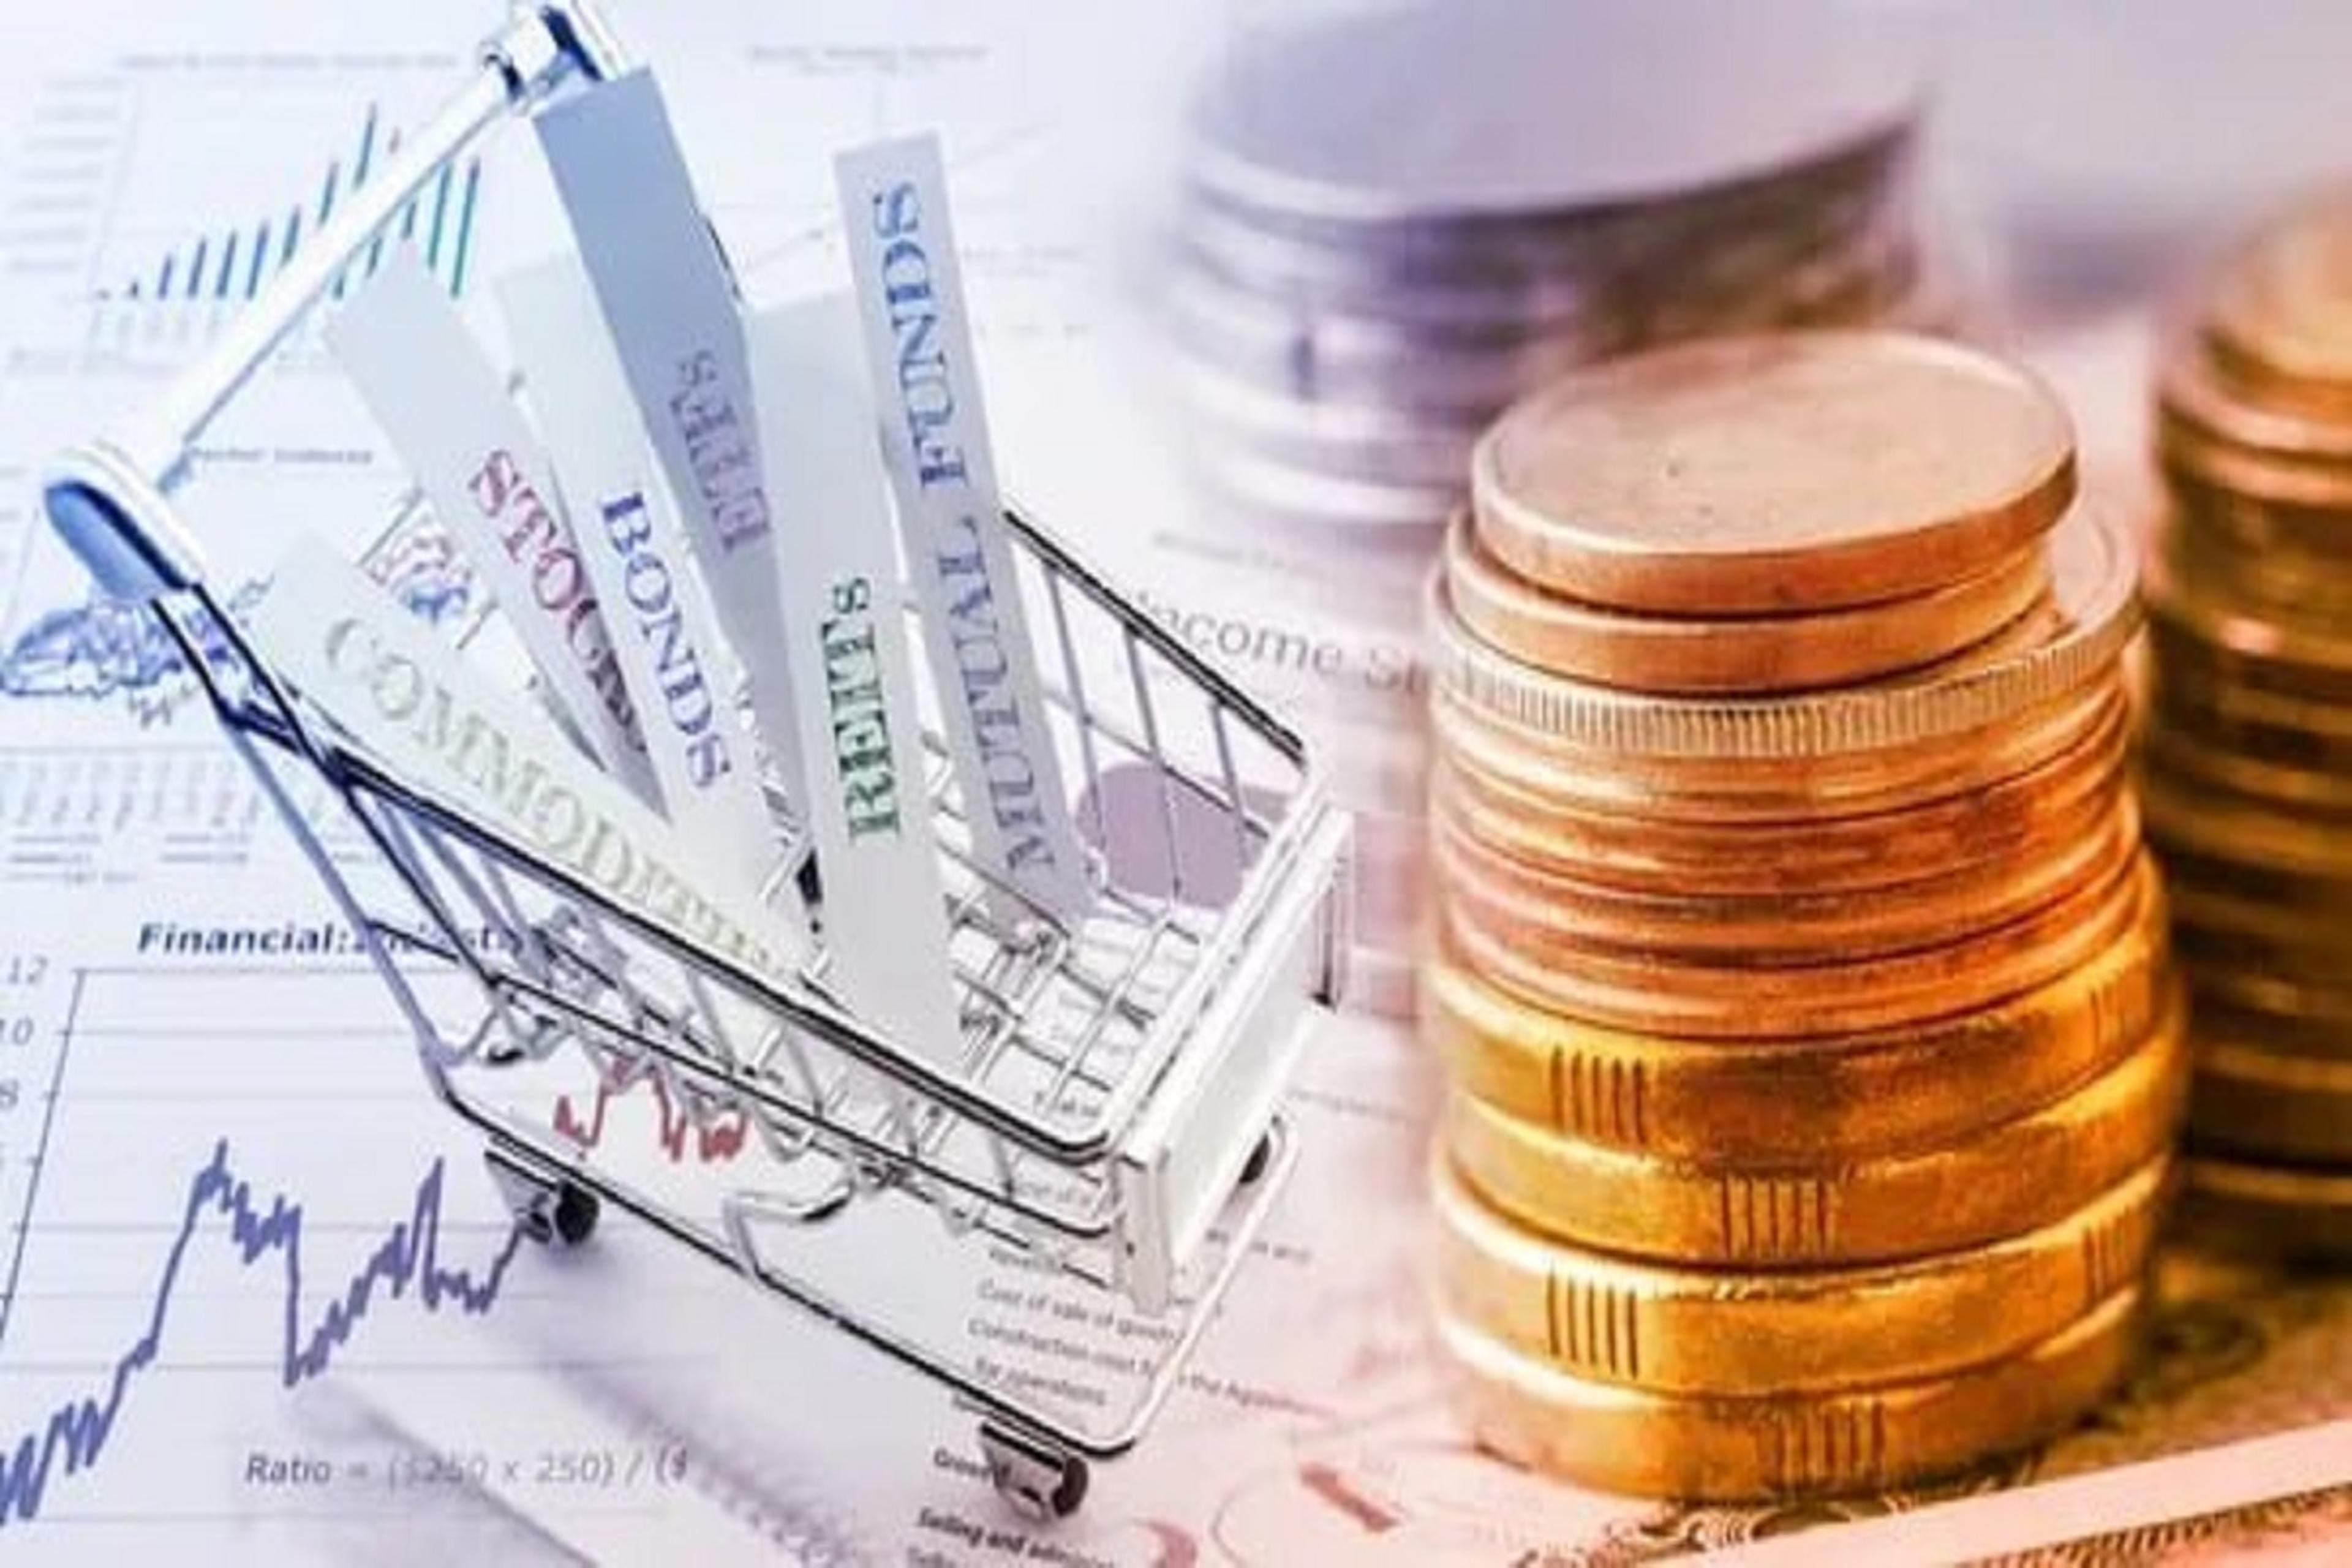 श्रीराम एएमसी का मल्टी एसेट एलोकेशन फंड, 1000 रुपए से शुरू किया जा सकता है निवेश